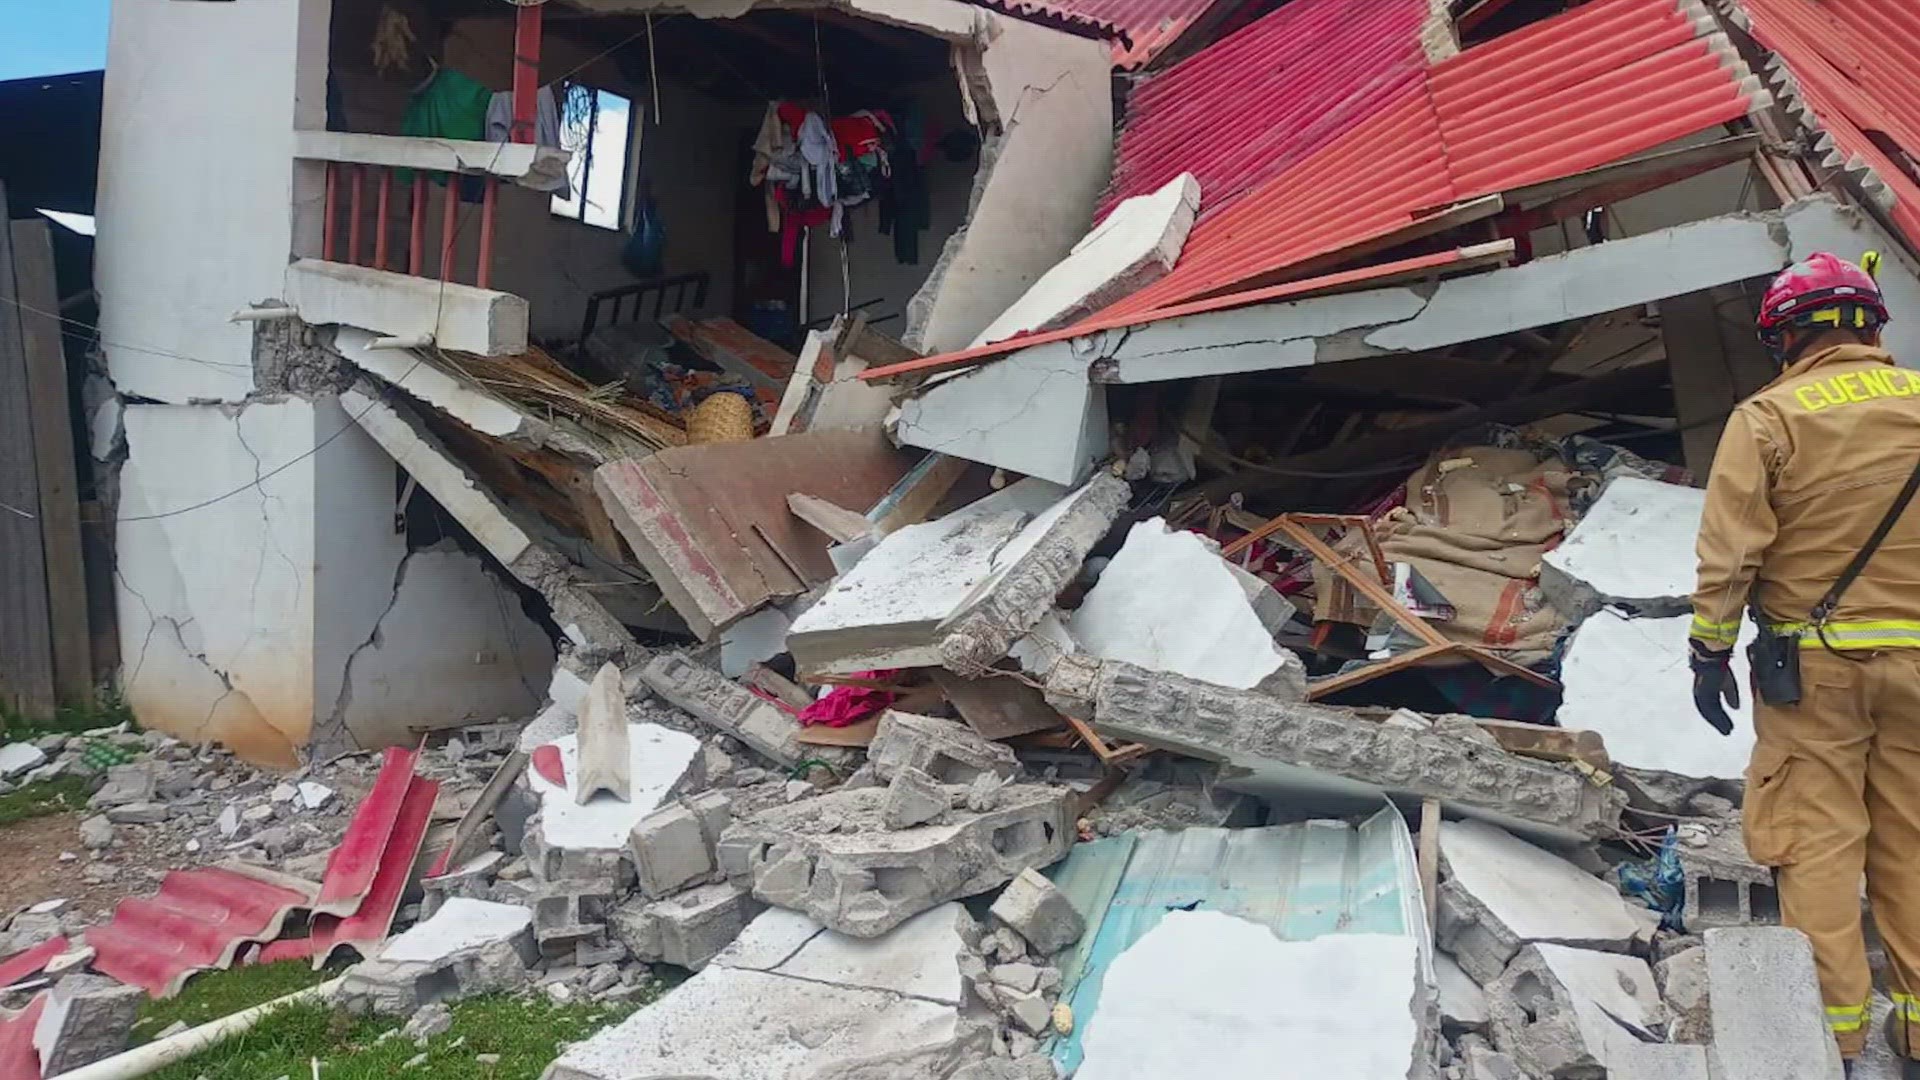 Ecuador में 6.7 तीव्रता का आया भूकंप, 15 लोगों की मौत 6.7 magnitude earthquake hits Ecuador, 15 killed